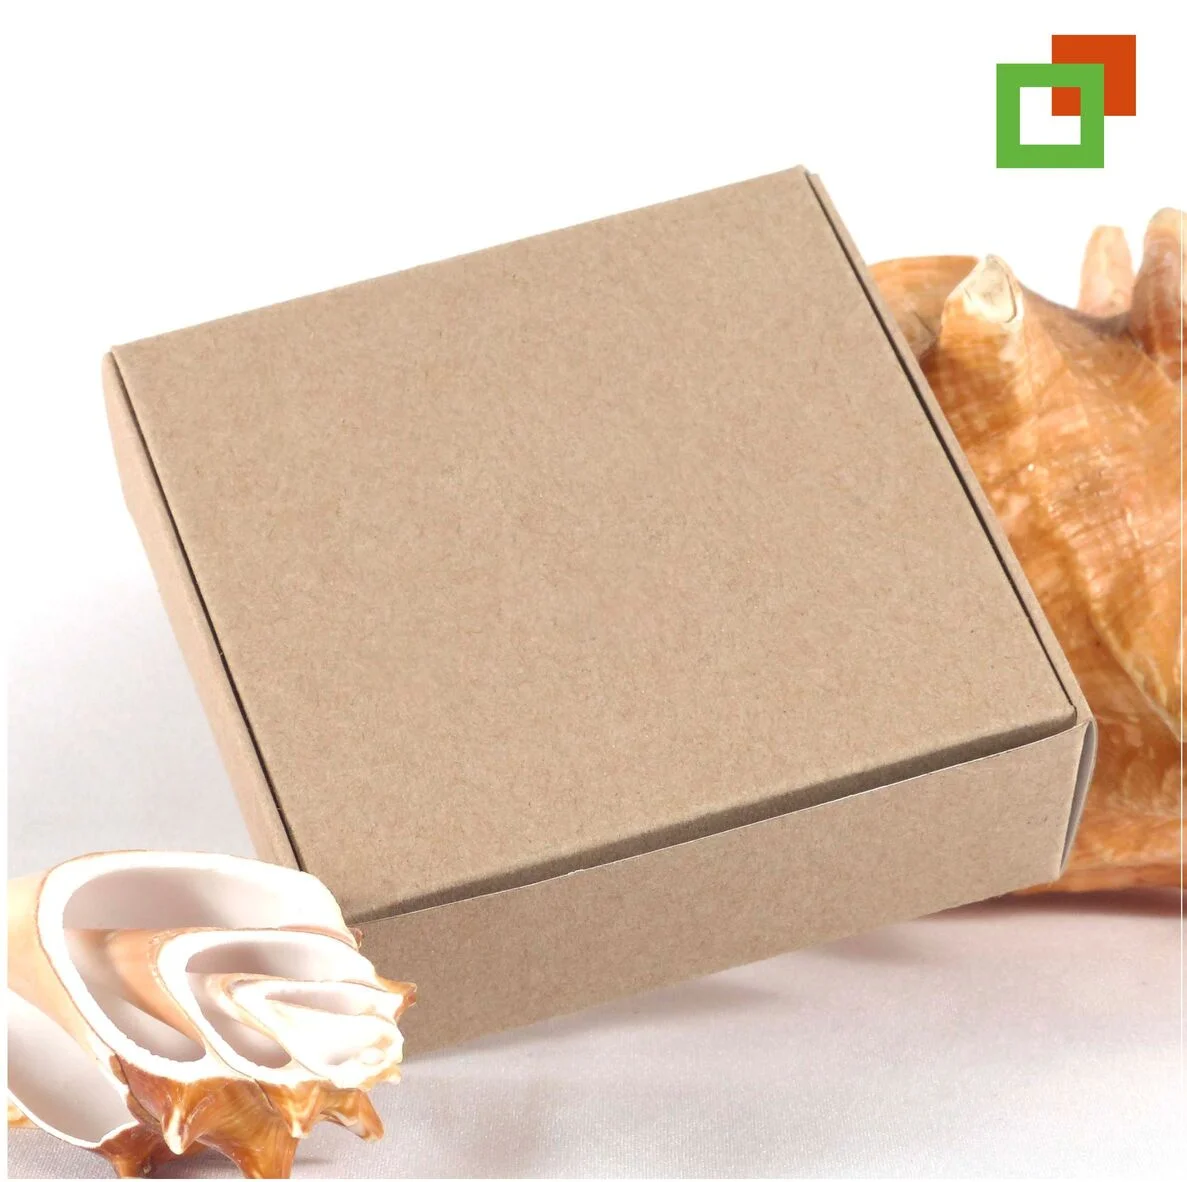 Caja de cartoncillo cuadrada blanco / café. Por su forma de cierre, esta caja cuenta con paredes dobles, lo que ayuda a proteger más tu producto.